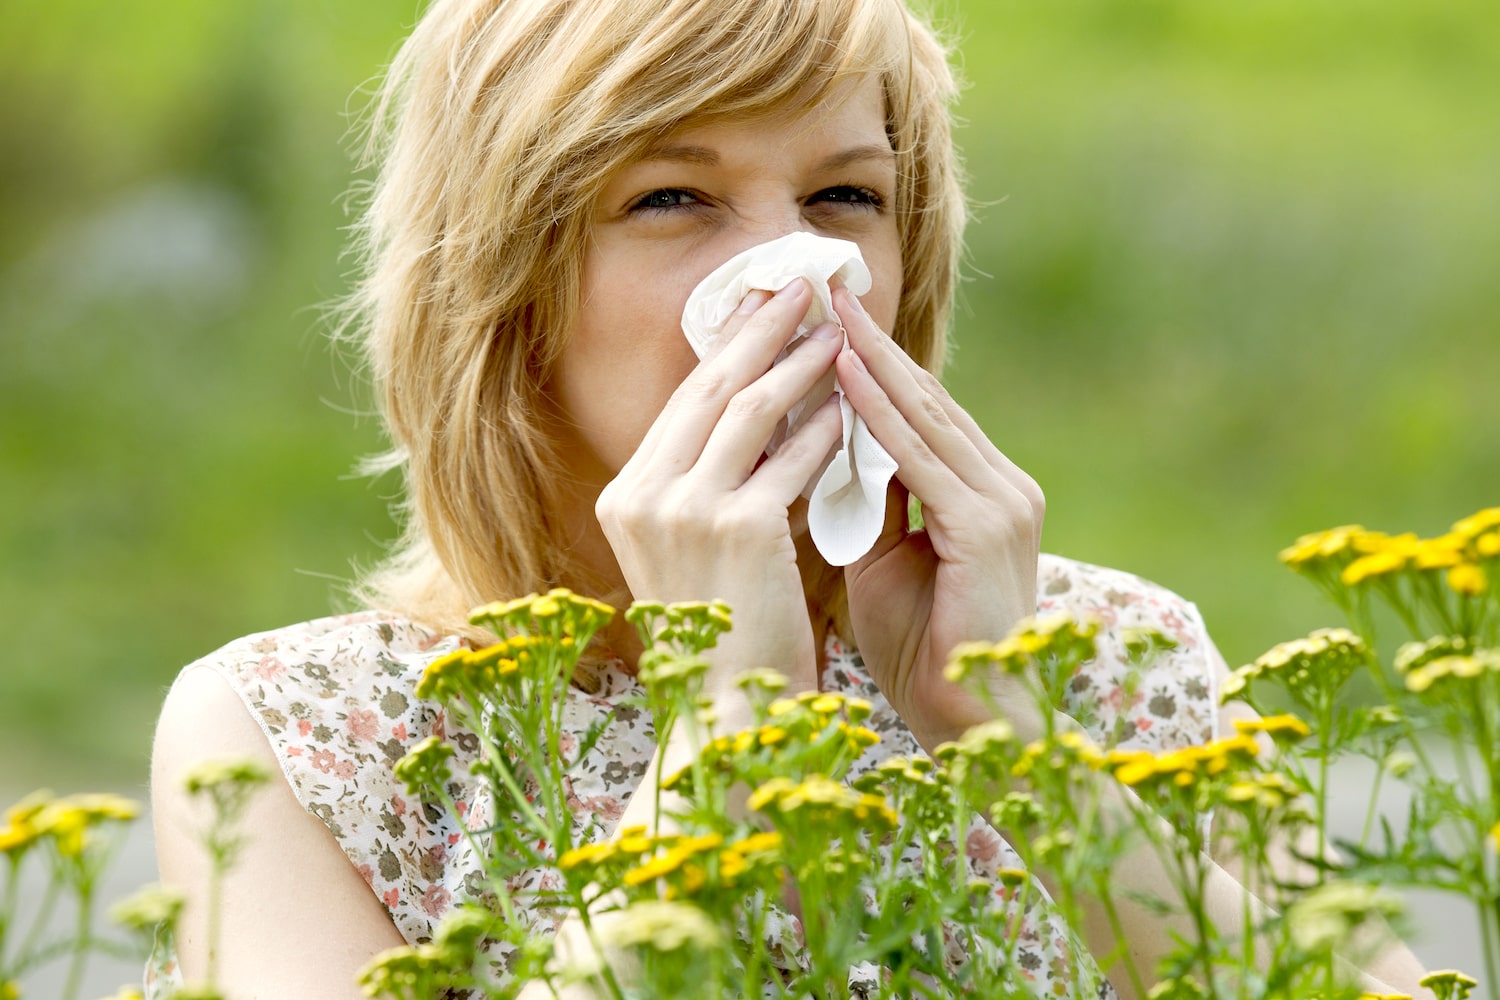 По оценкам различных экспертов, сезонным аллергическим ринитом при контакте с пыльцой растений страдают 10–25% россиян. Причиной является поллиноз: хроническое заболевание с воспалением слизистых оболочек глаз и дыхательных путей, преимущественно вер...